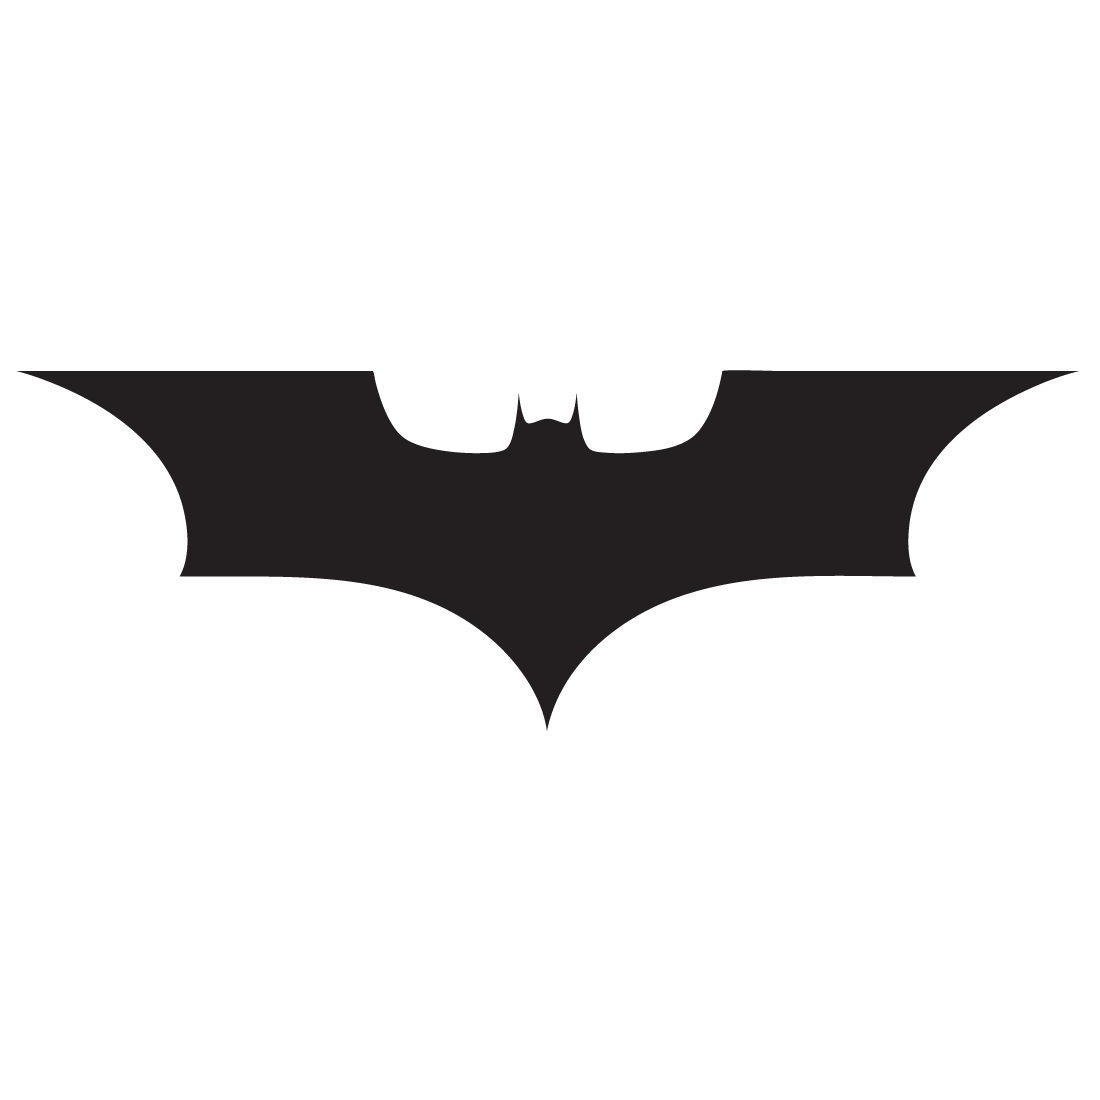 Batman Begins logo decal vinyl sticker sticker - Comics ...